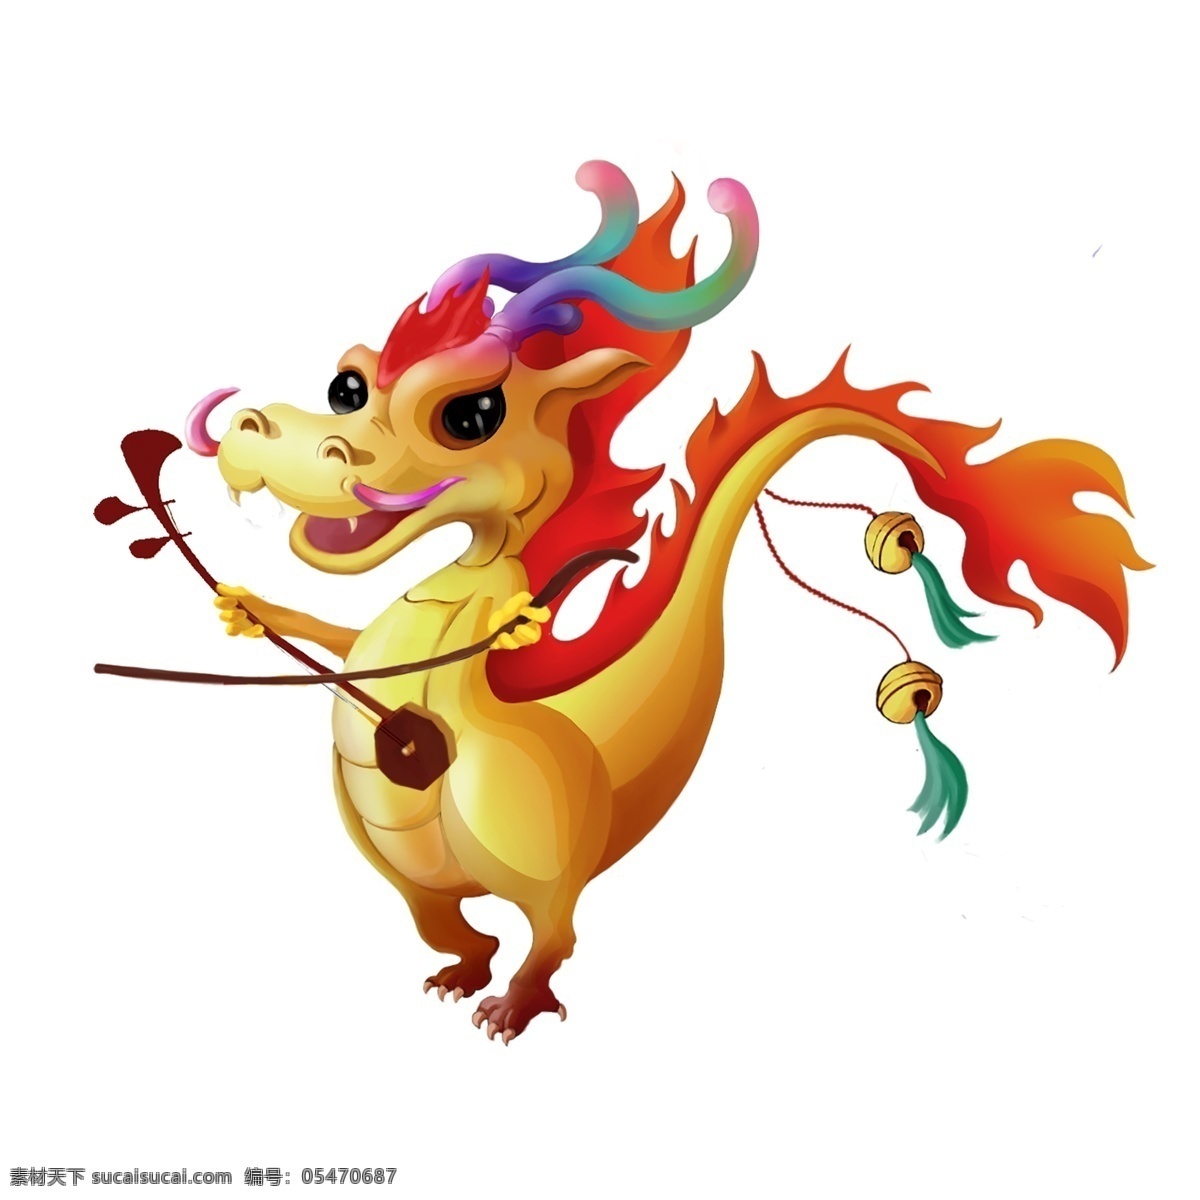 中国 风 手绘 可爱 卡通 彩色 立体 龙 卡通龙 动物 中国龙 中国风 二胡 乐器